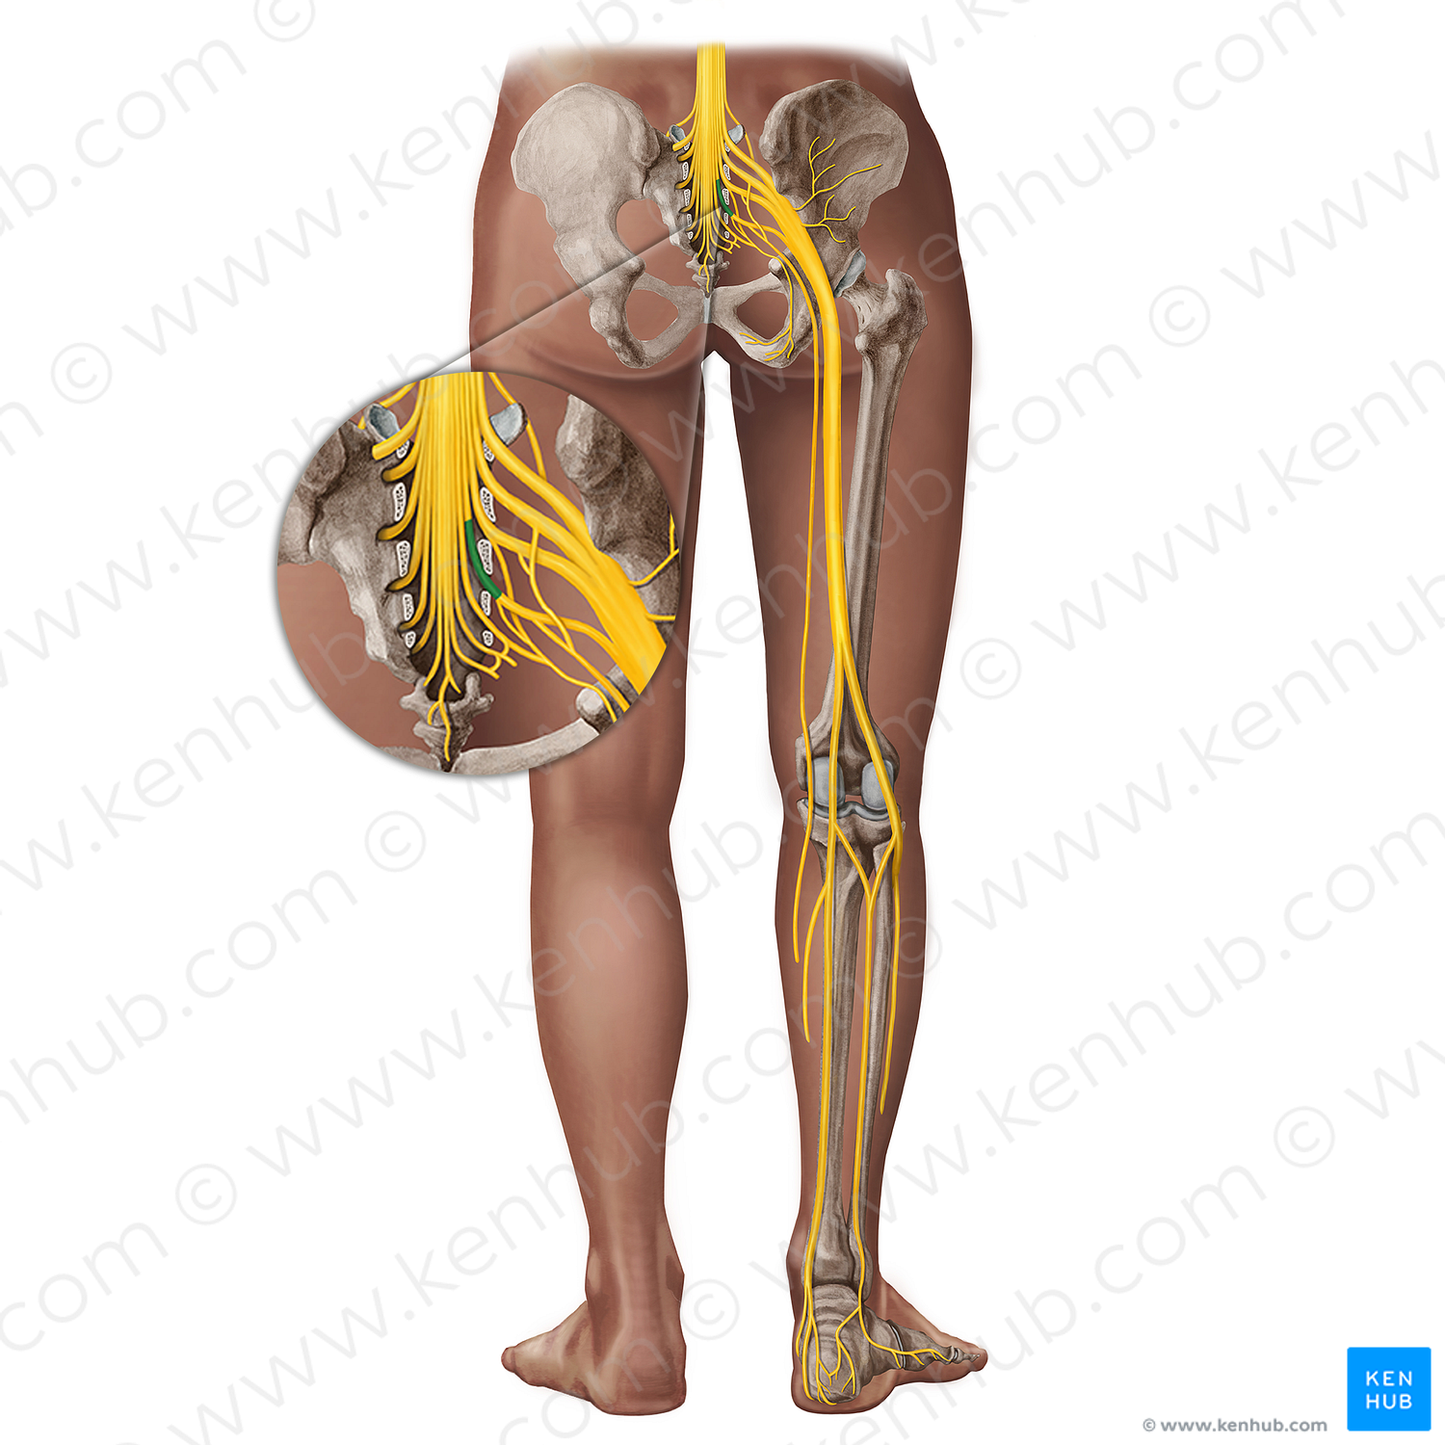 Spinal nerve S3 (#18290)